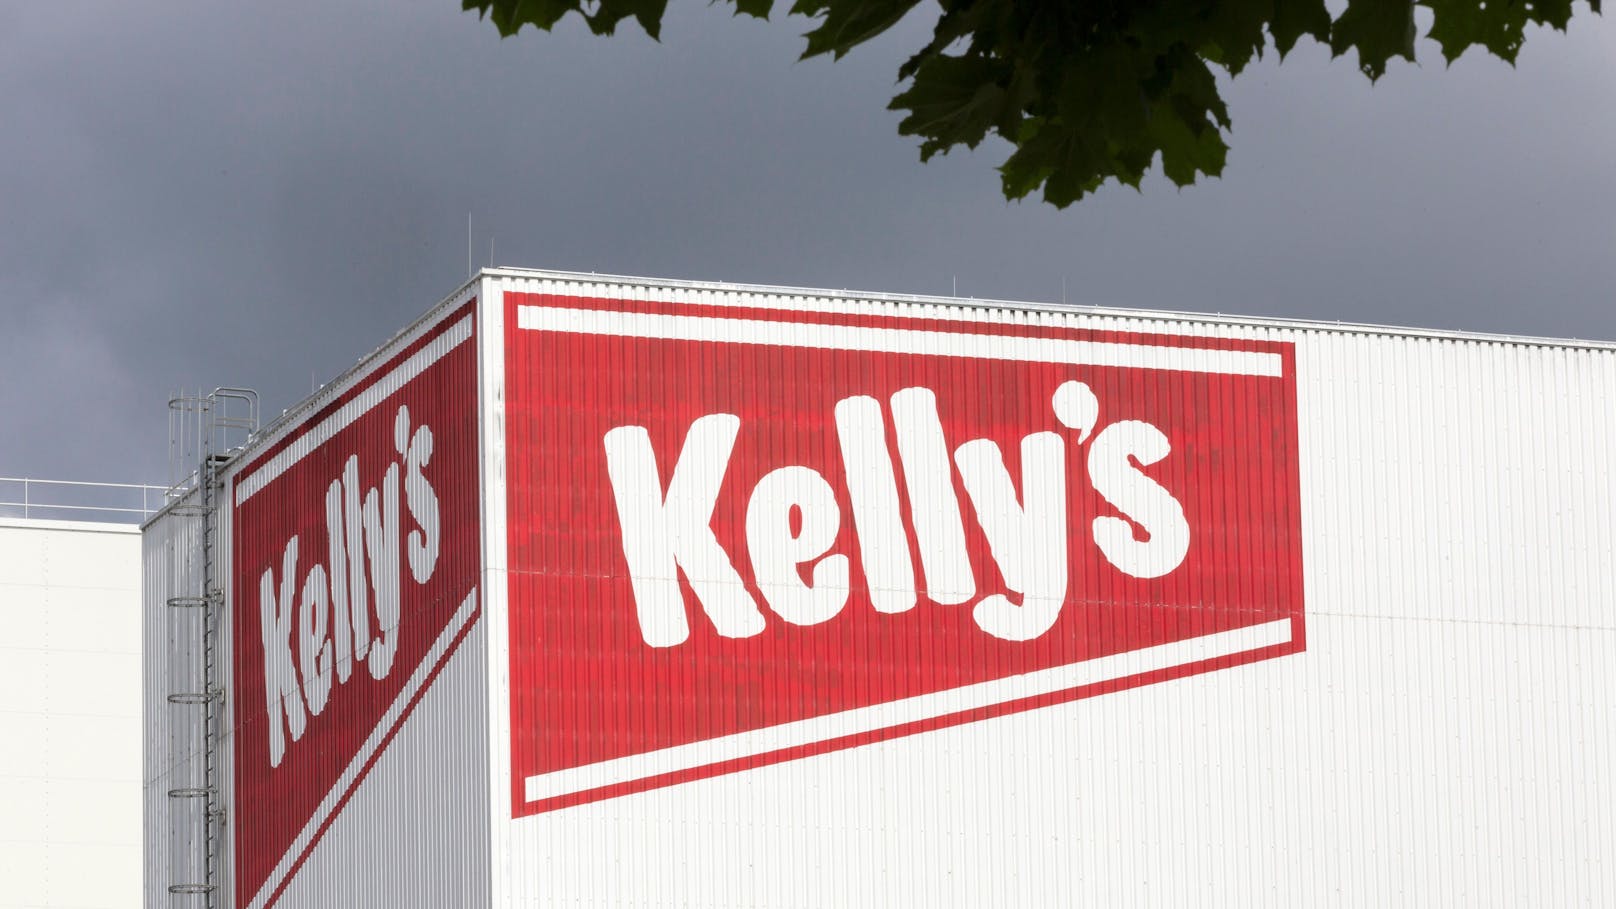 "In einem Packerl sind rund 70 Prozent österreichische Erdäpfel, 30 Prozent feinstes Sonnenblumenöl und ein bisserl österreichisches Salz – was soll daran schlimm sein?", rechtfertigte sich der Kellys-Chef.